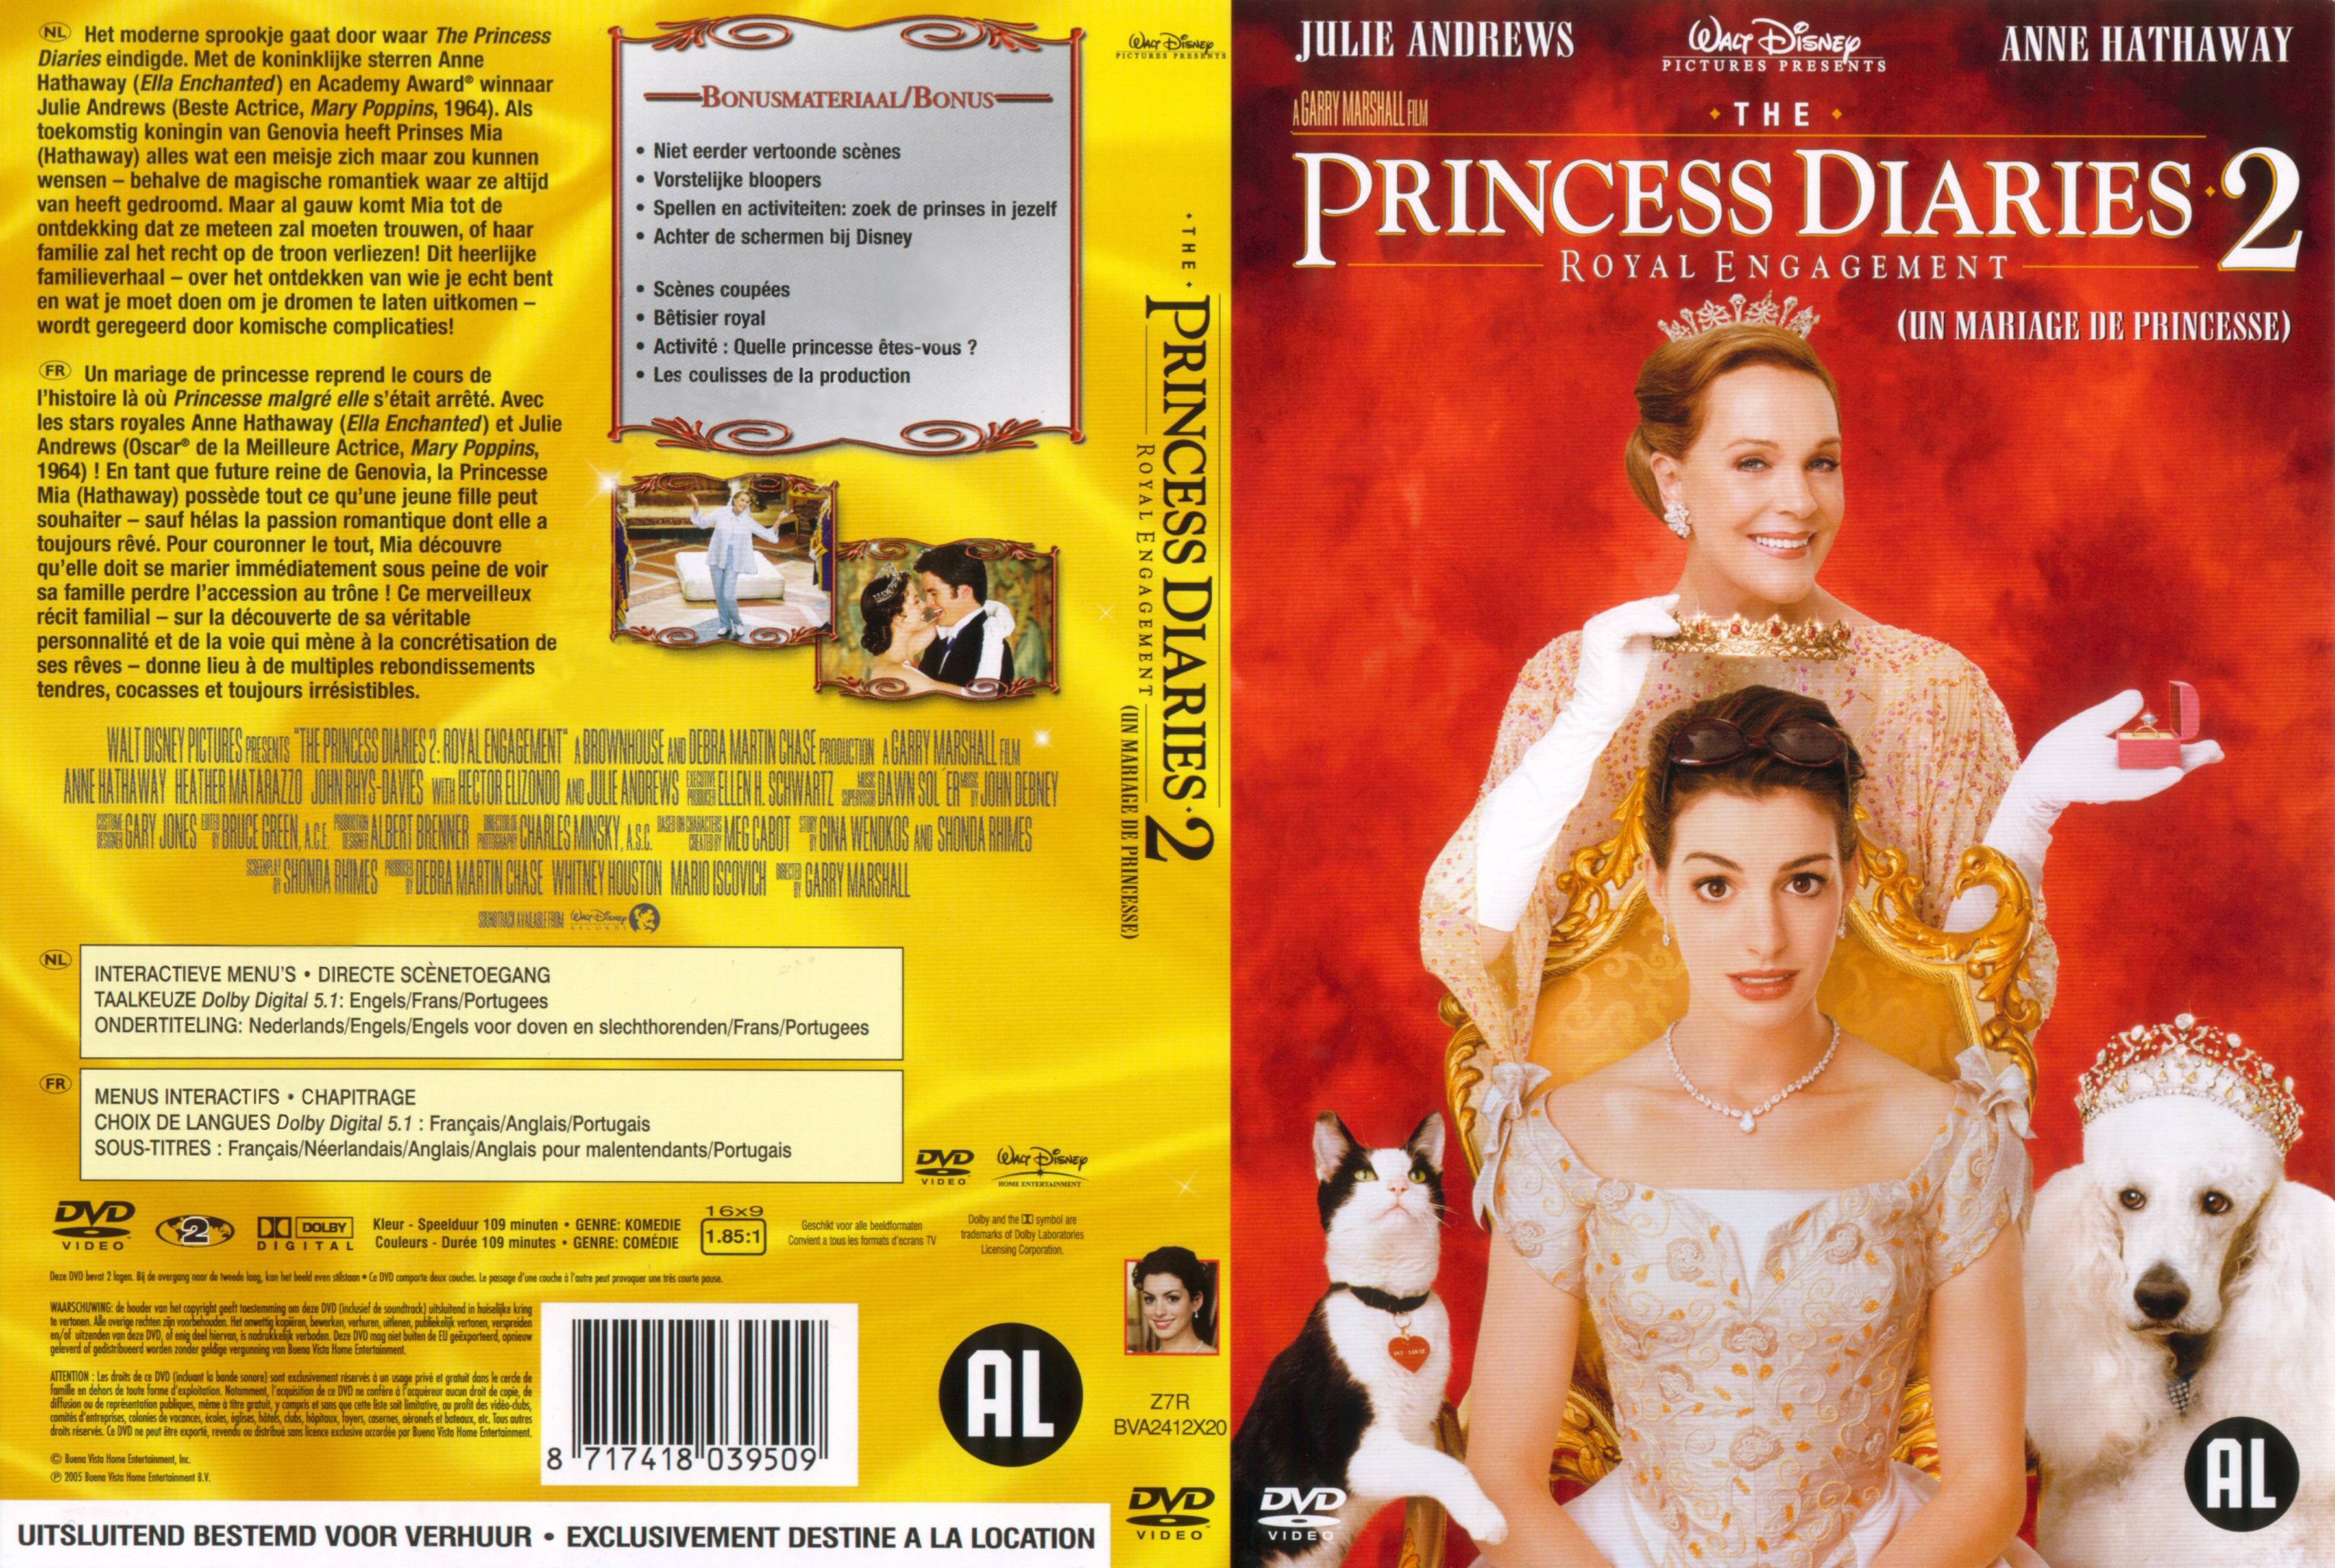 Jaquette DVD Un mariage de princesse v2